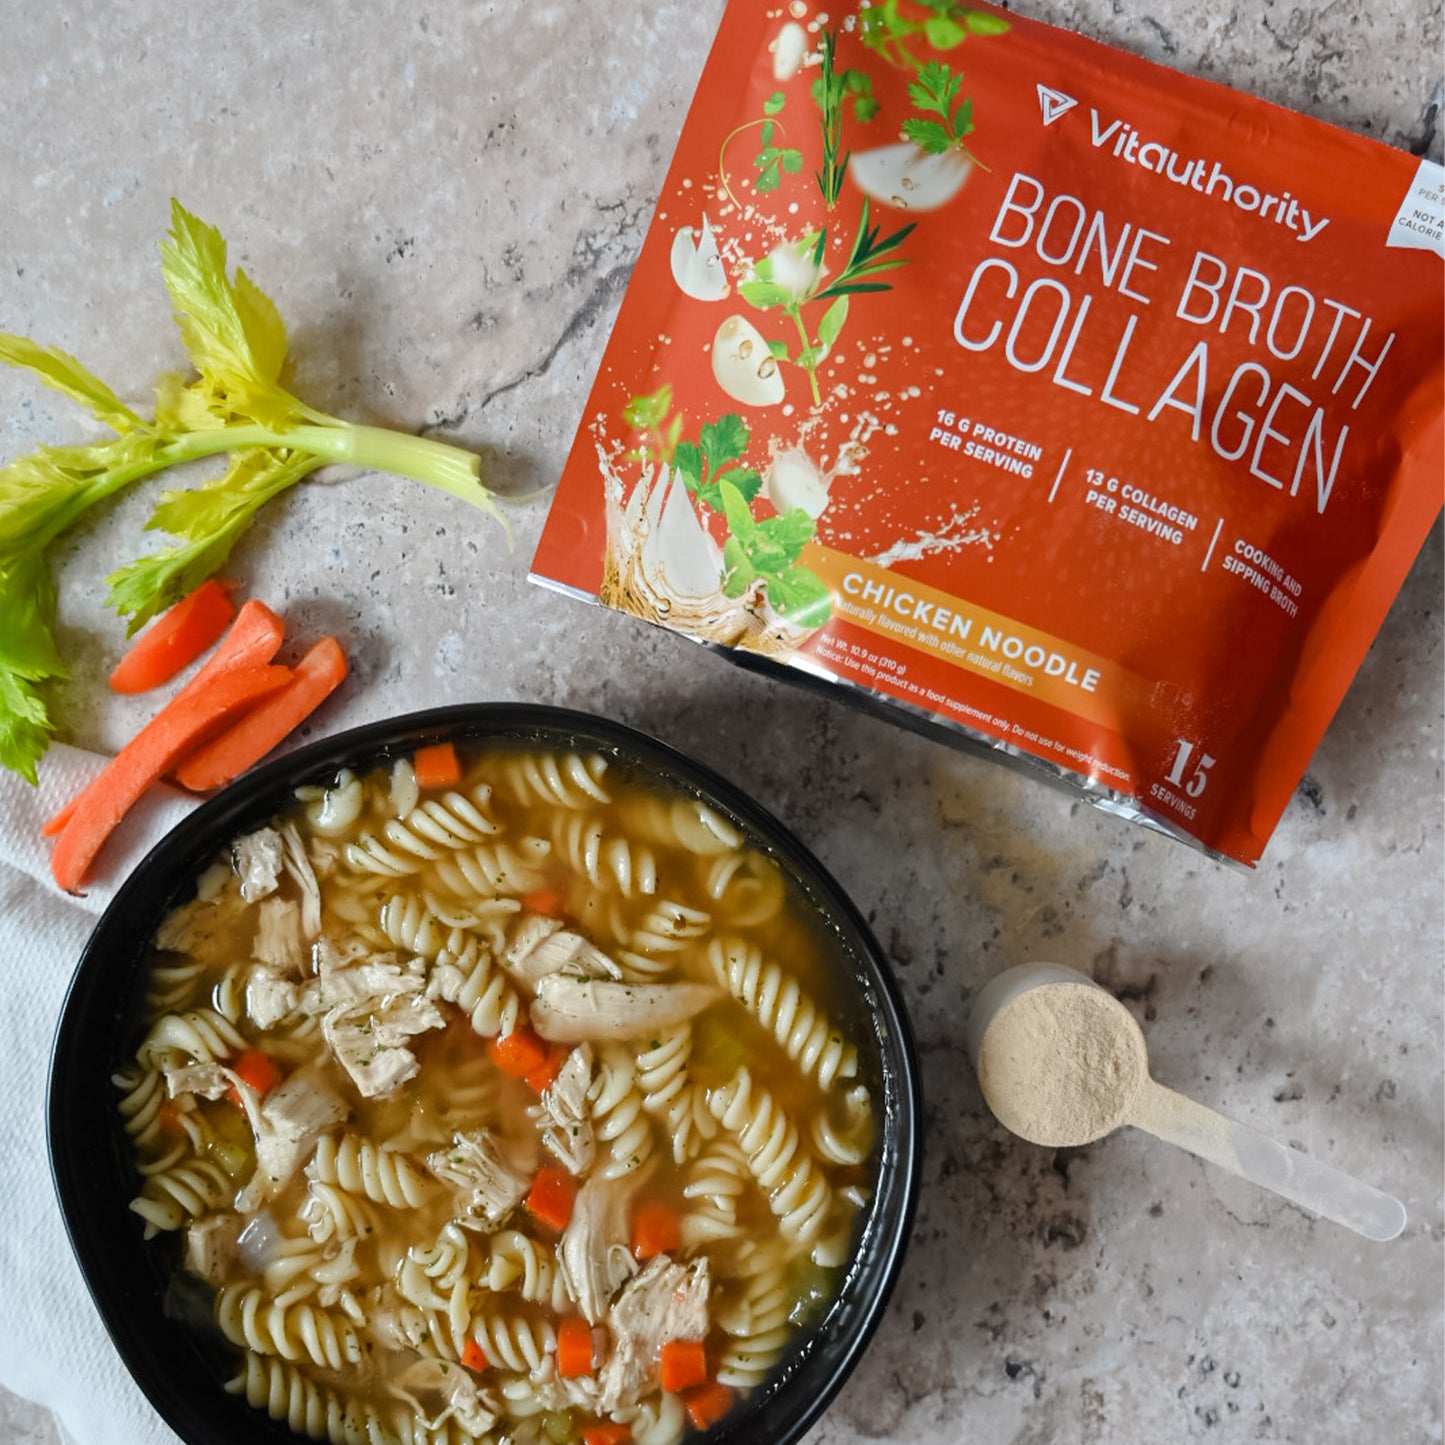 Bone Broth Collagen - Chicken Noodle Flavor